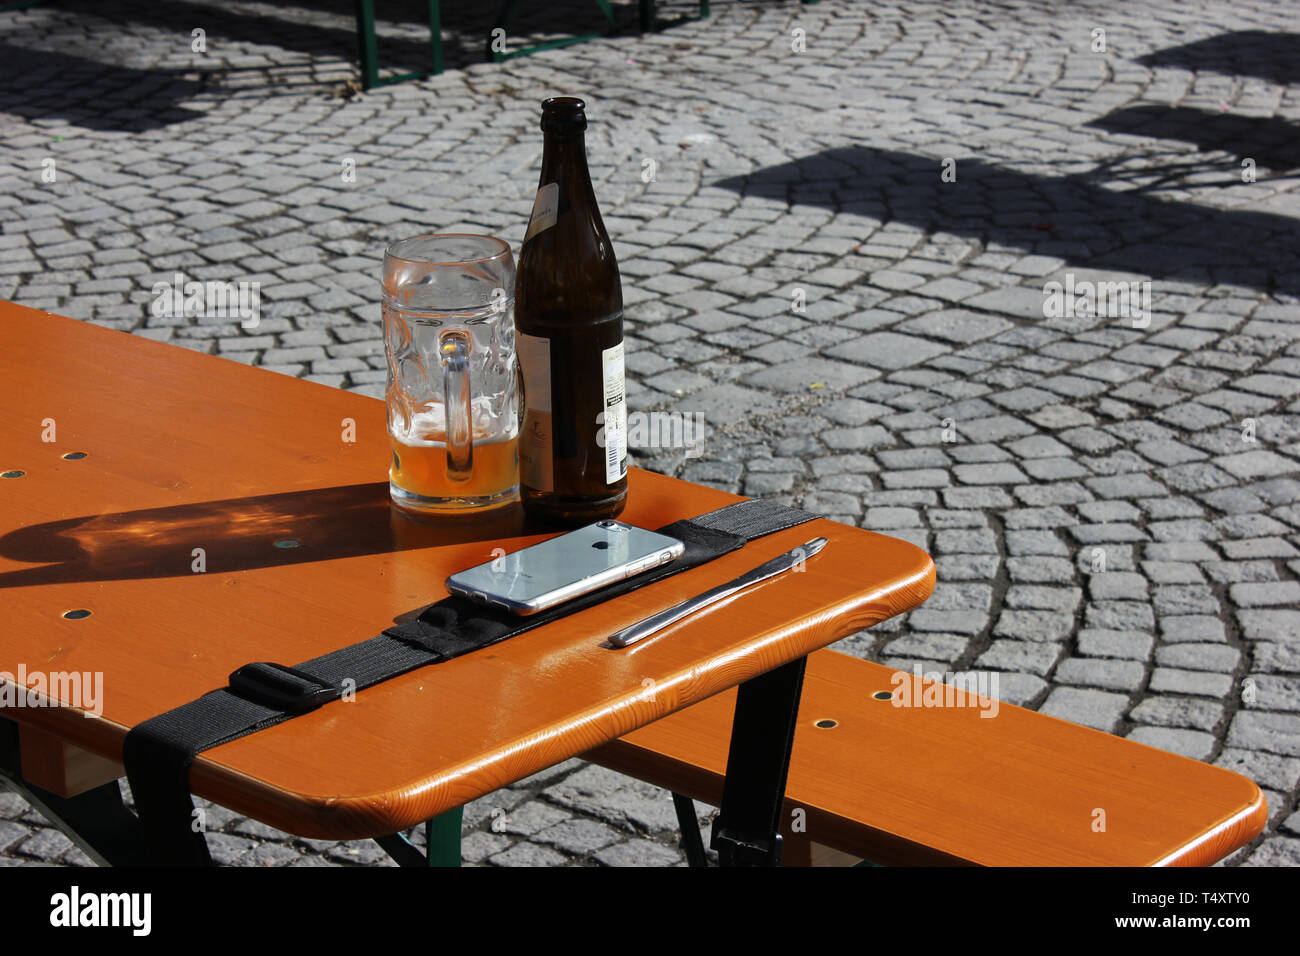 Biergarten Tabelle mit Einstellung der Bierflasche, Bier Glas und handlich. Stockfoto